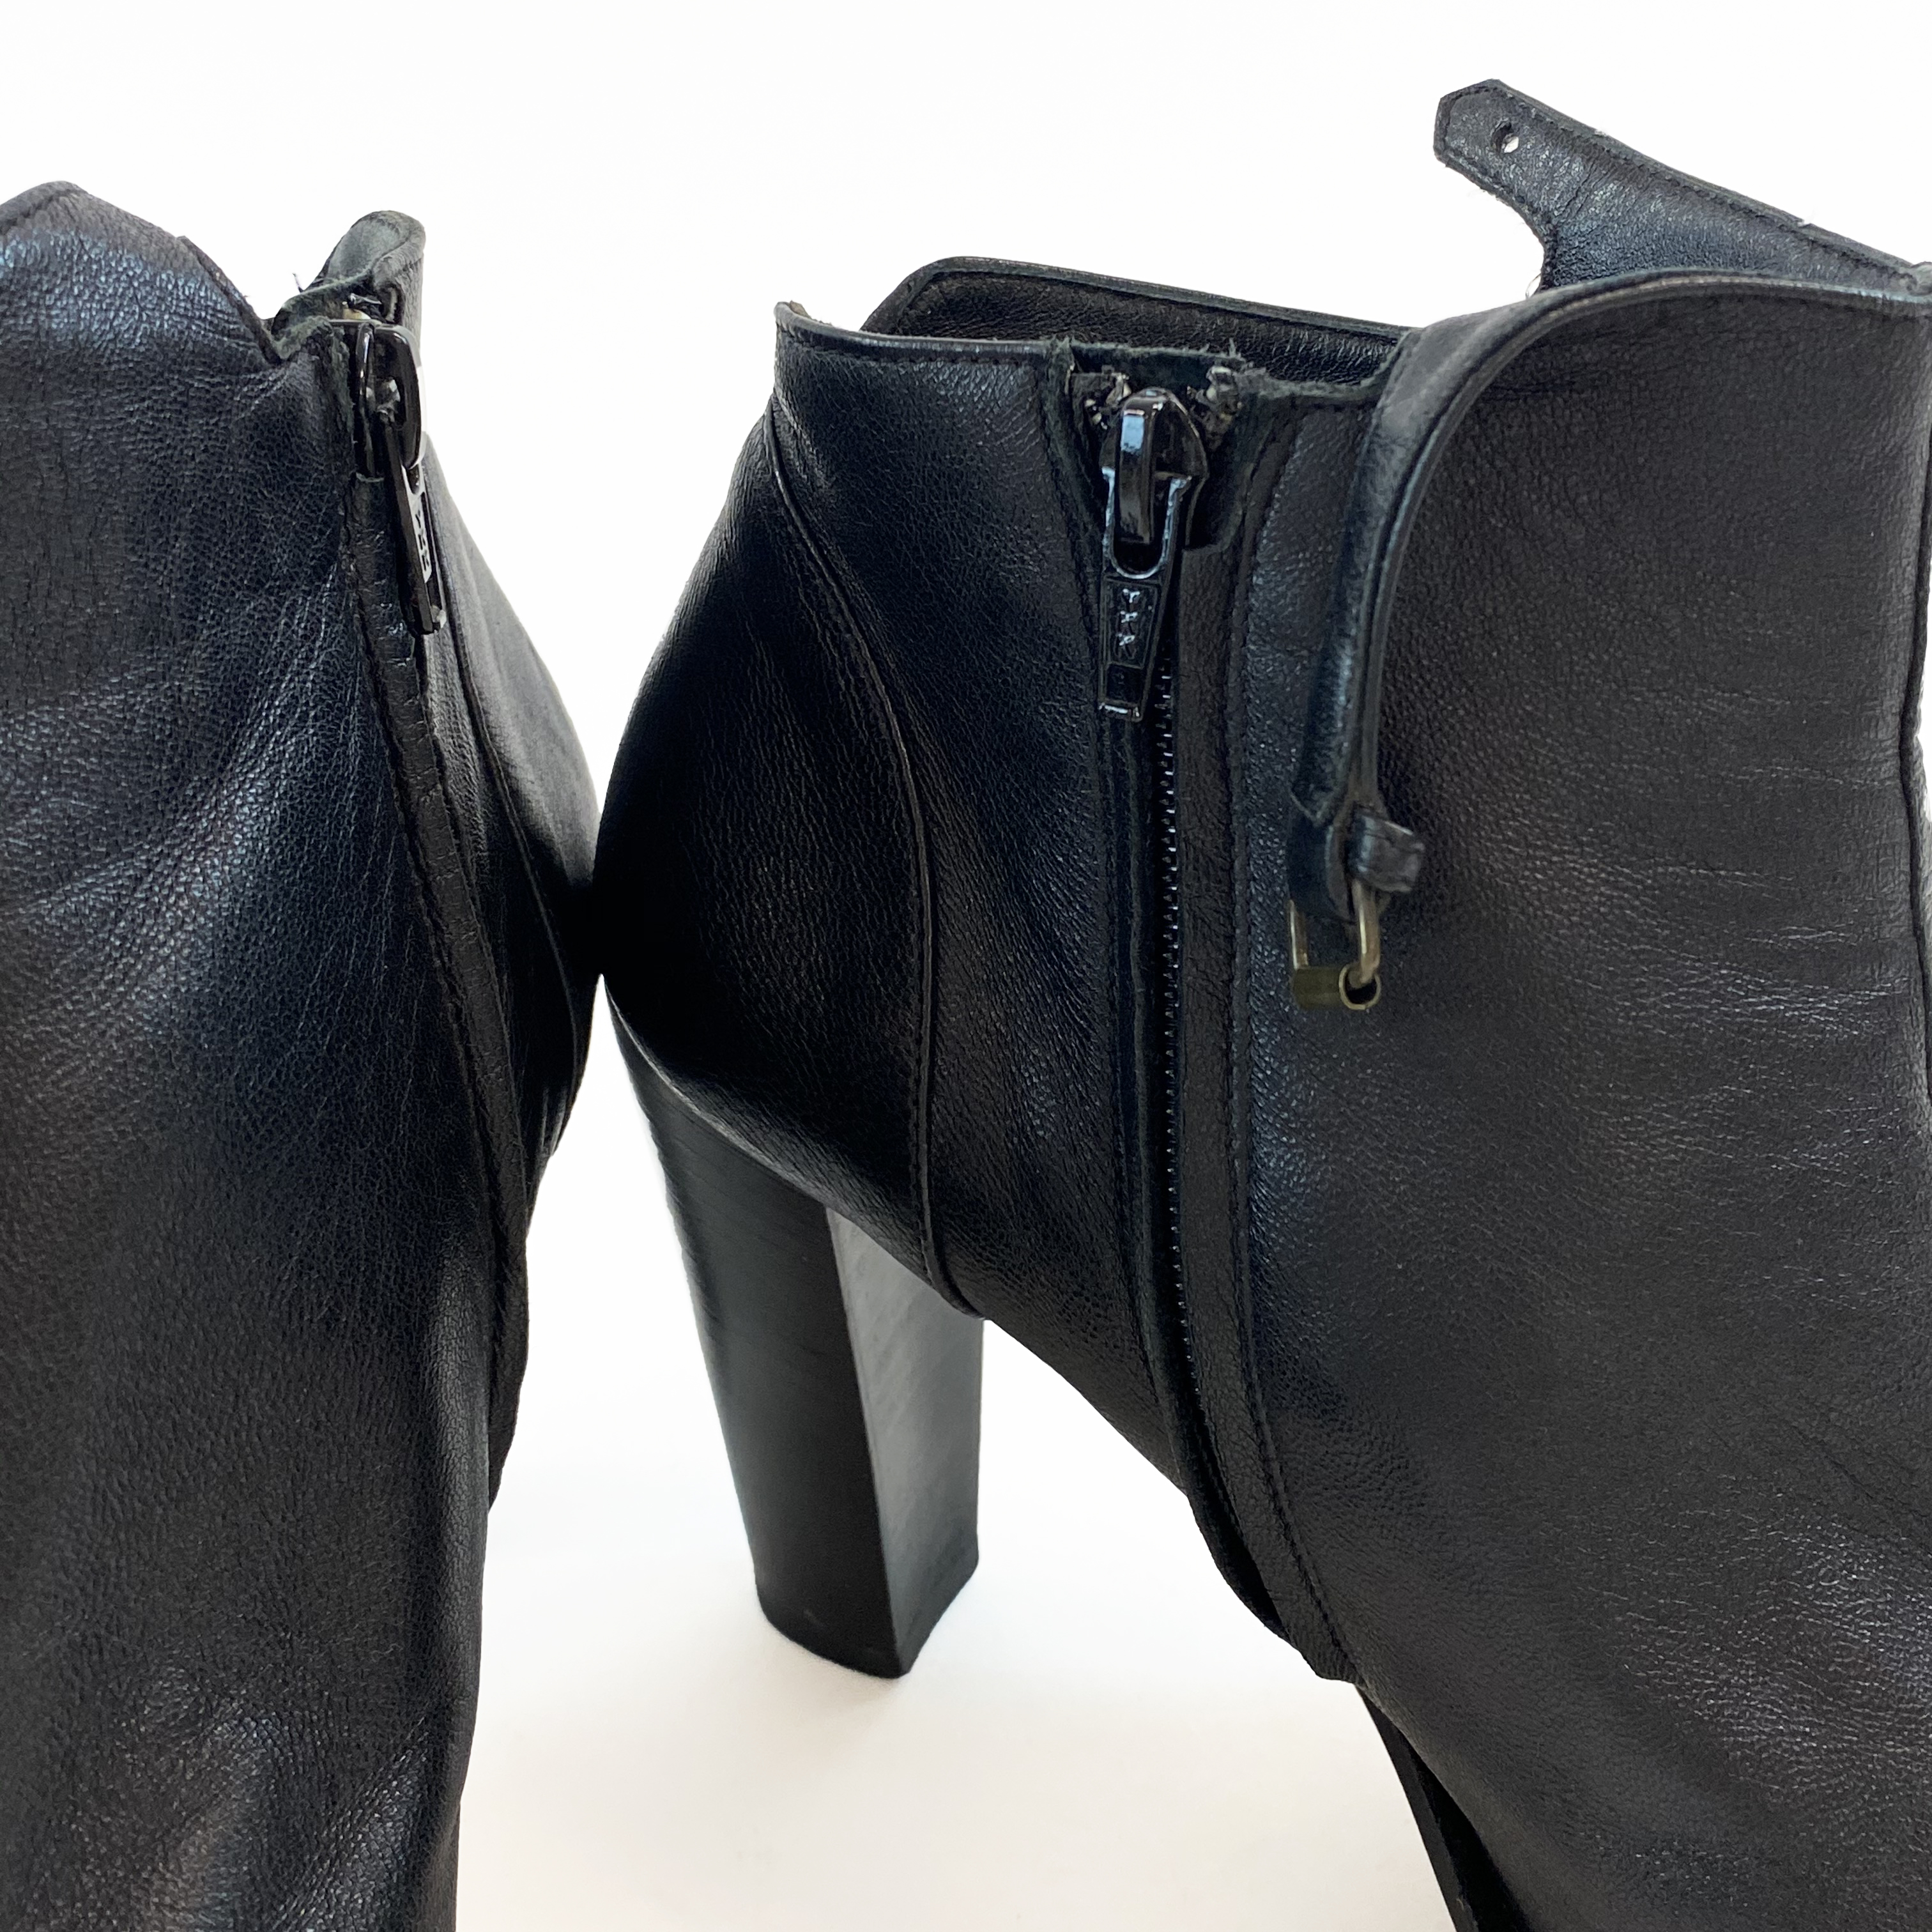 AF Vandervorst Leather Ankle Boots